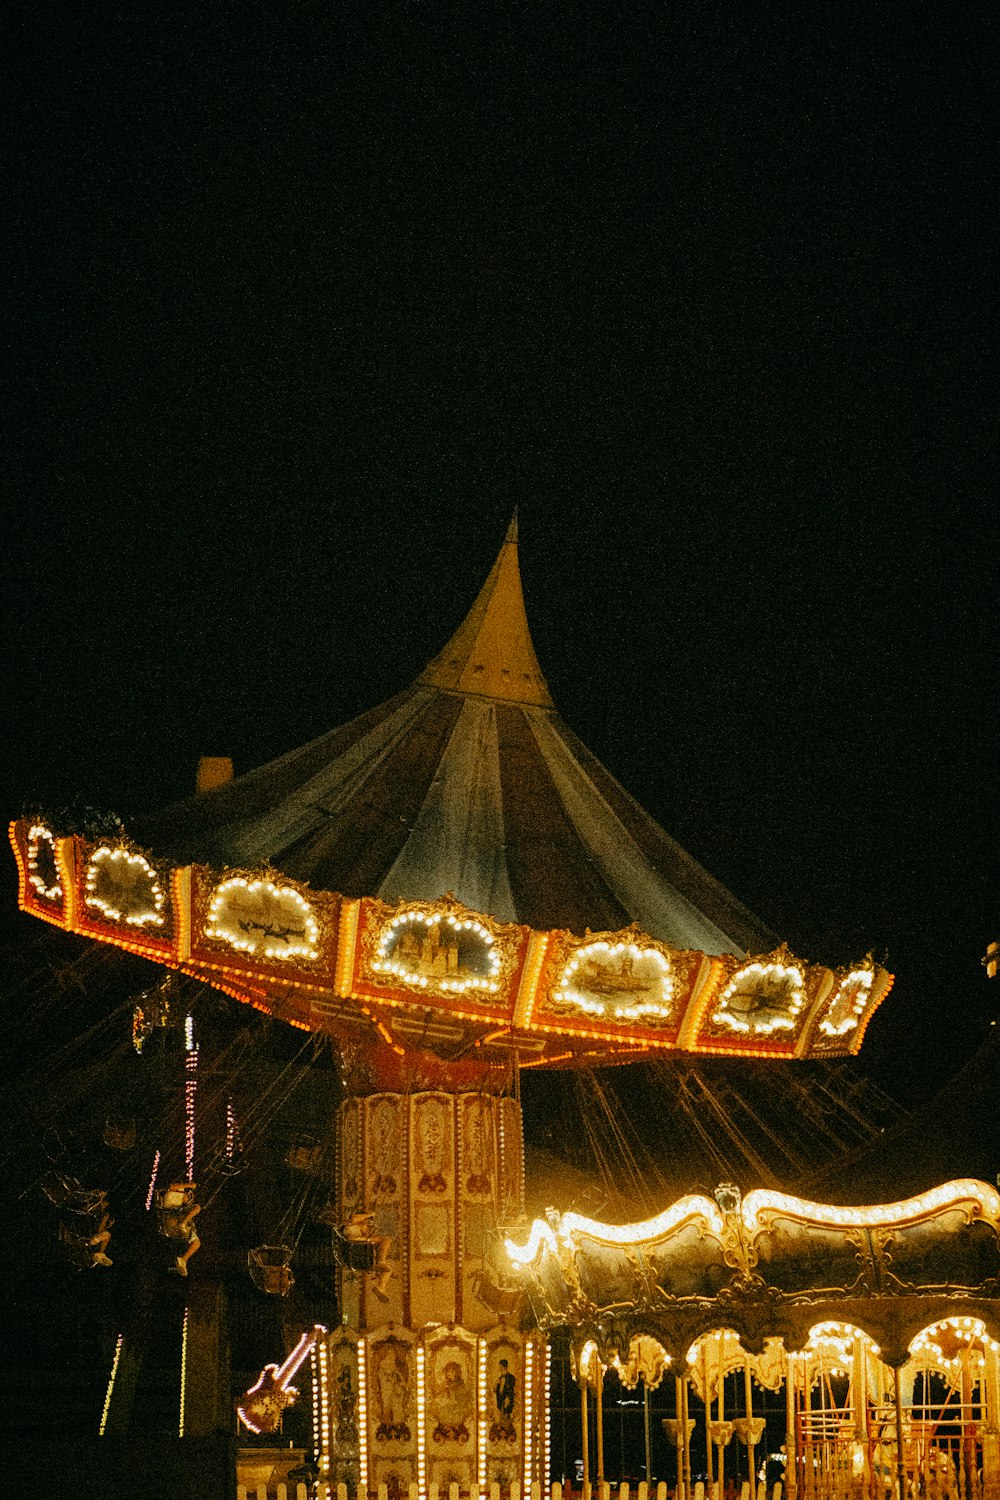 Ein Karussell bei Nacht mit Lichtern